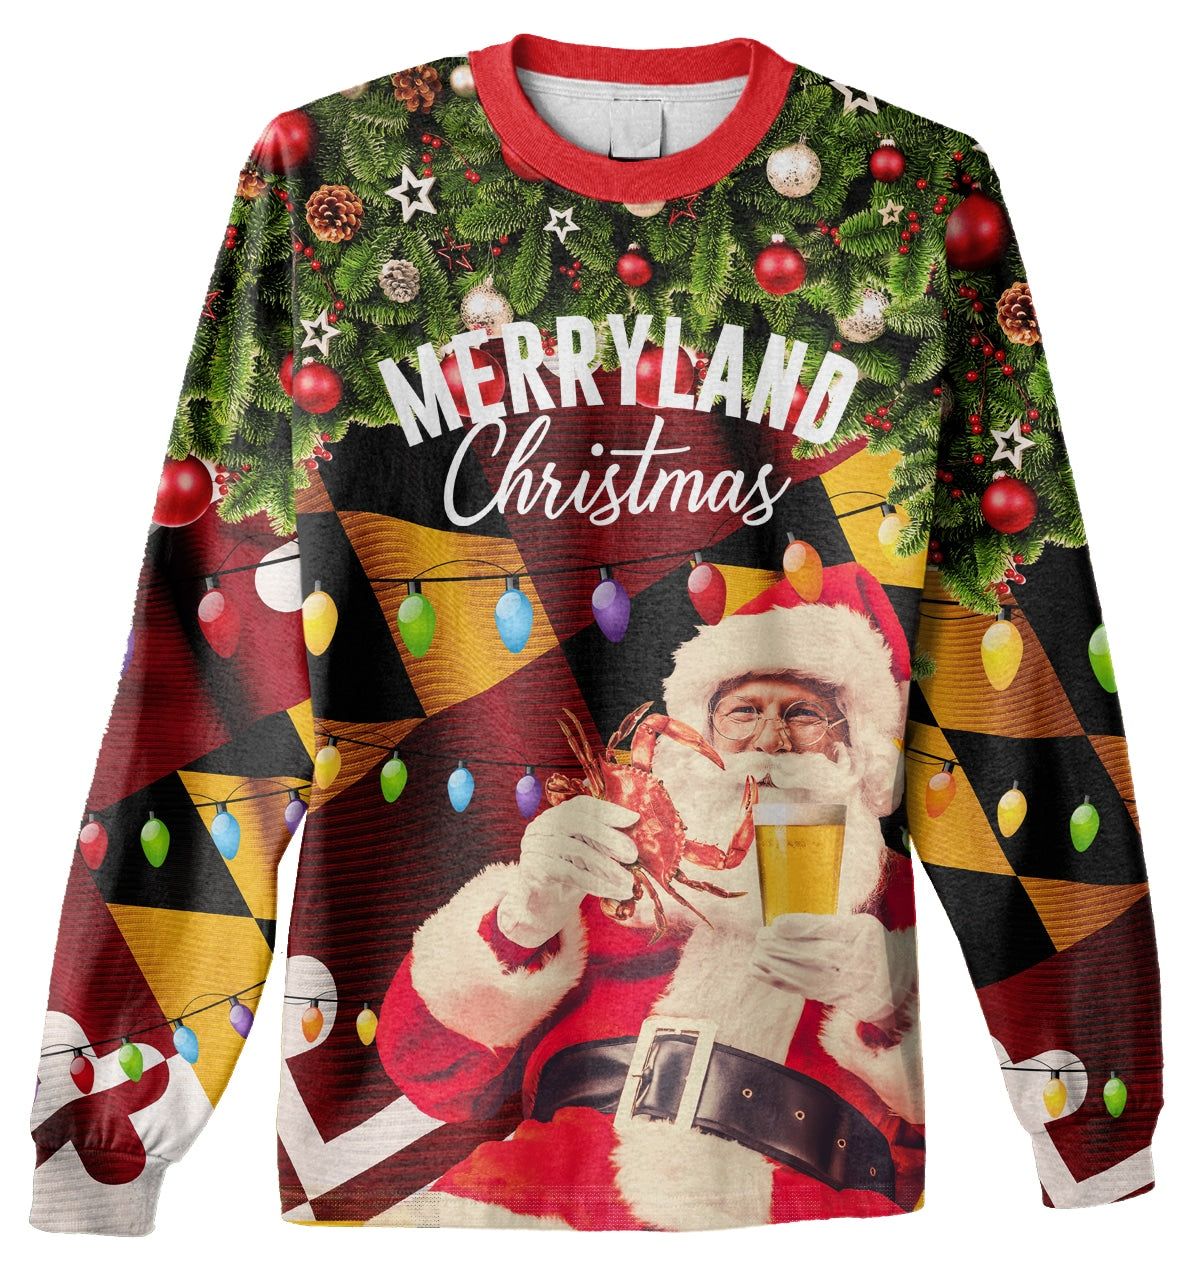 Merryland Christmas Ugly Sweater